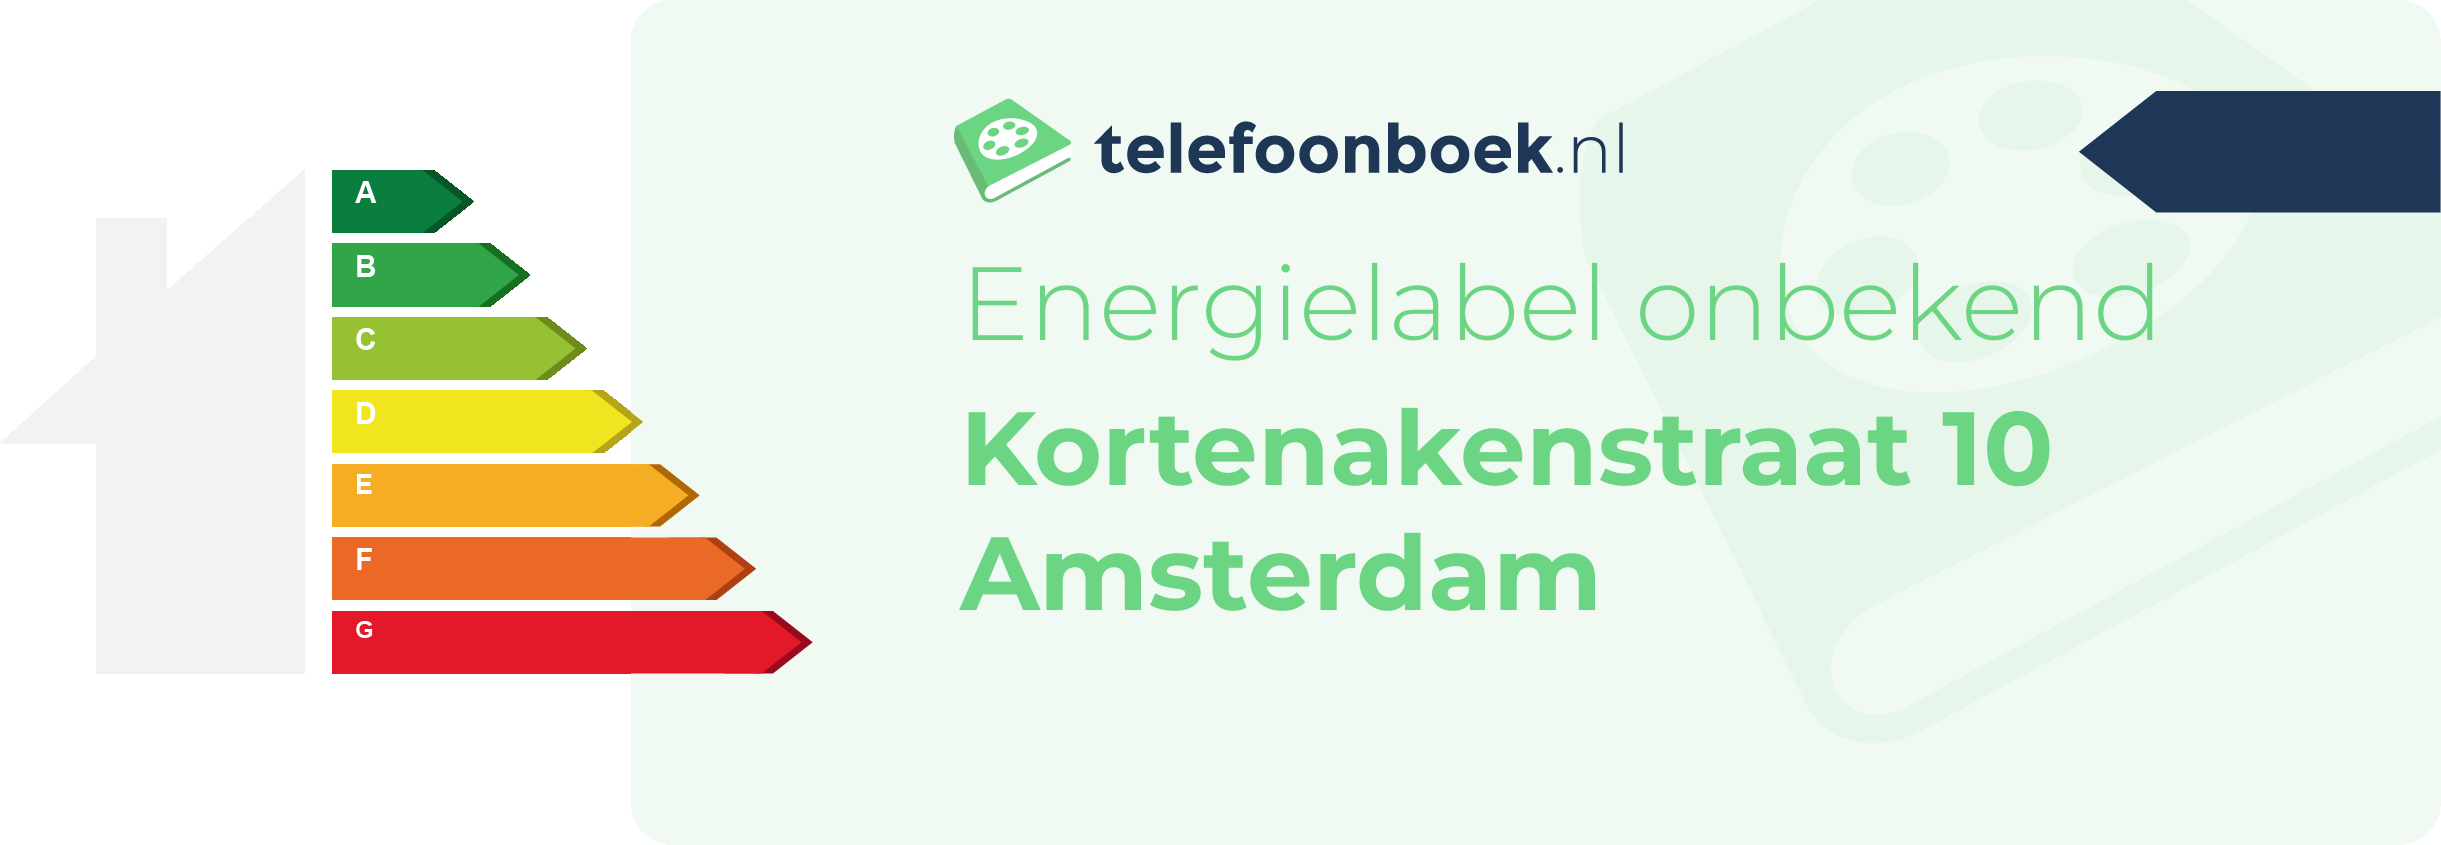 Energielabel Kortenakenstraat 10 Amsterdam